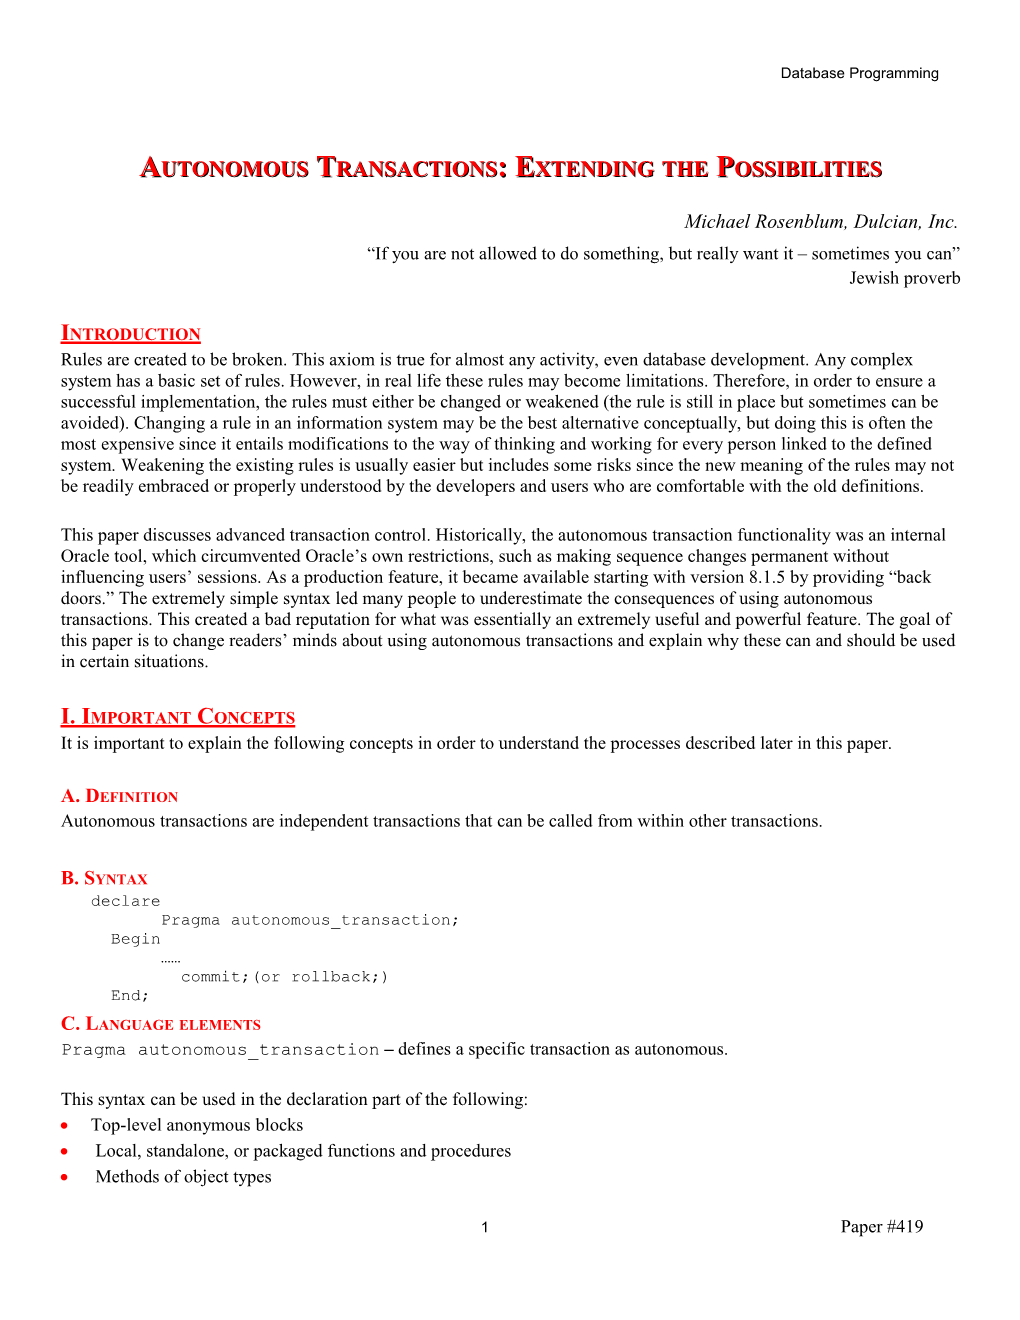 Autonomous Transactions: Extending the Possibilities